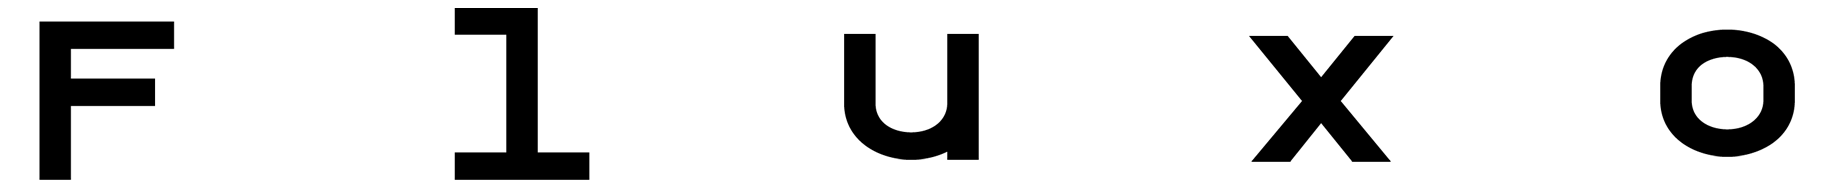 O Fluxo logo